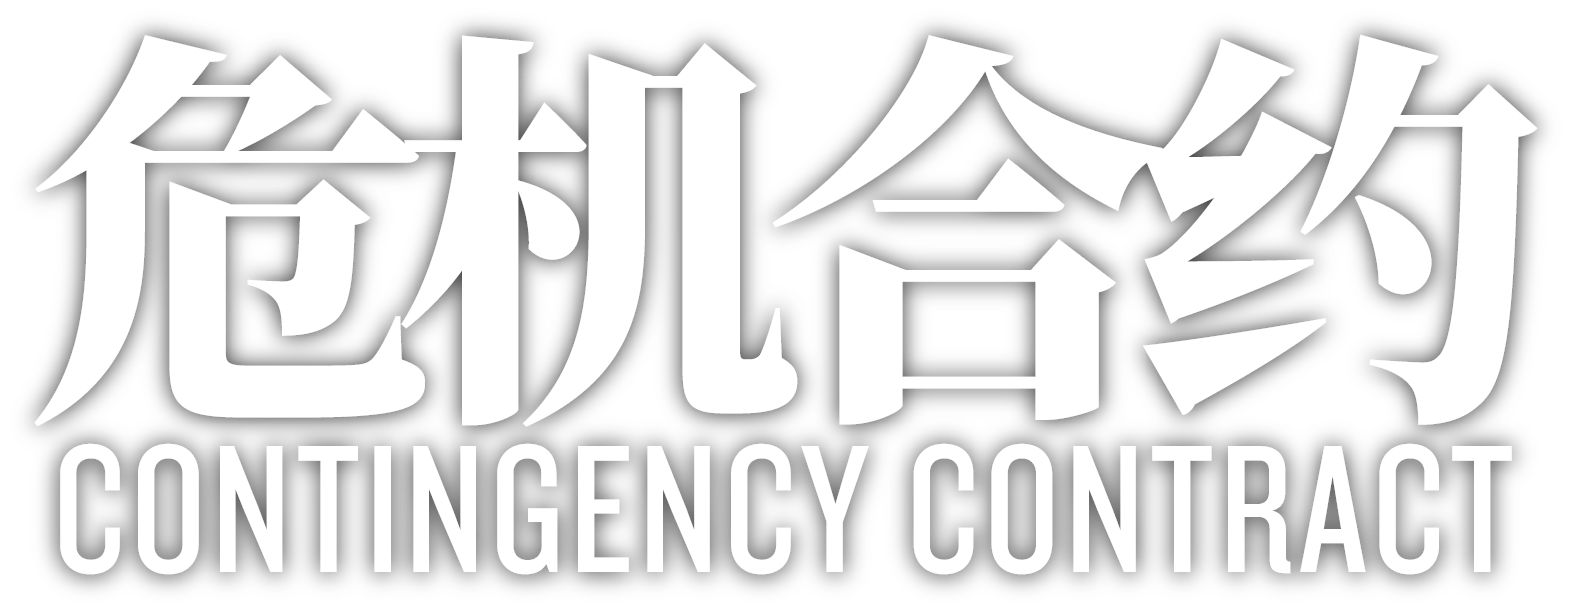 明日方舟 危機合約 logo.png